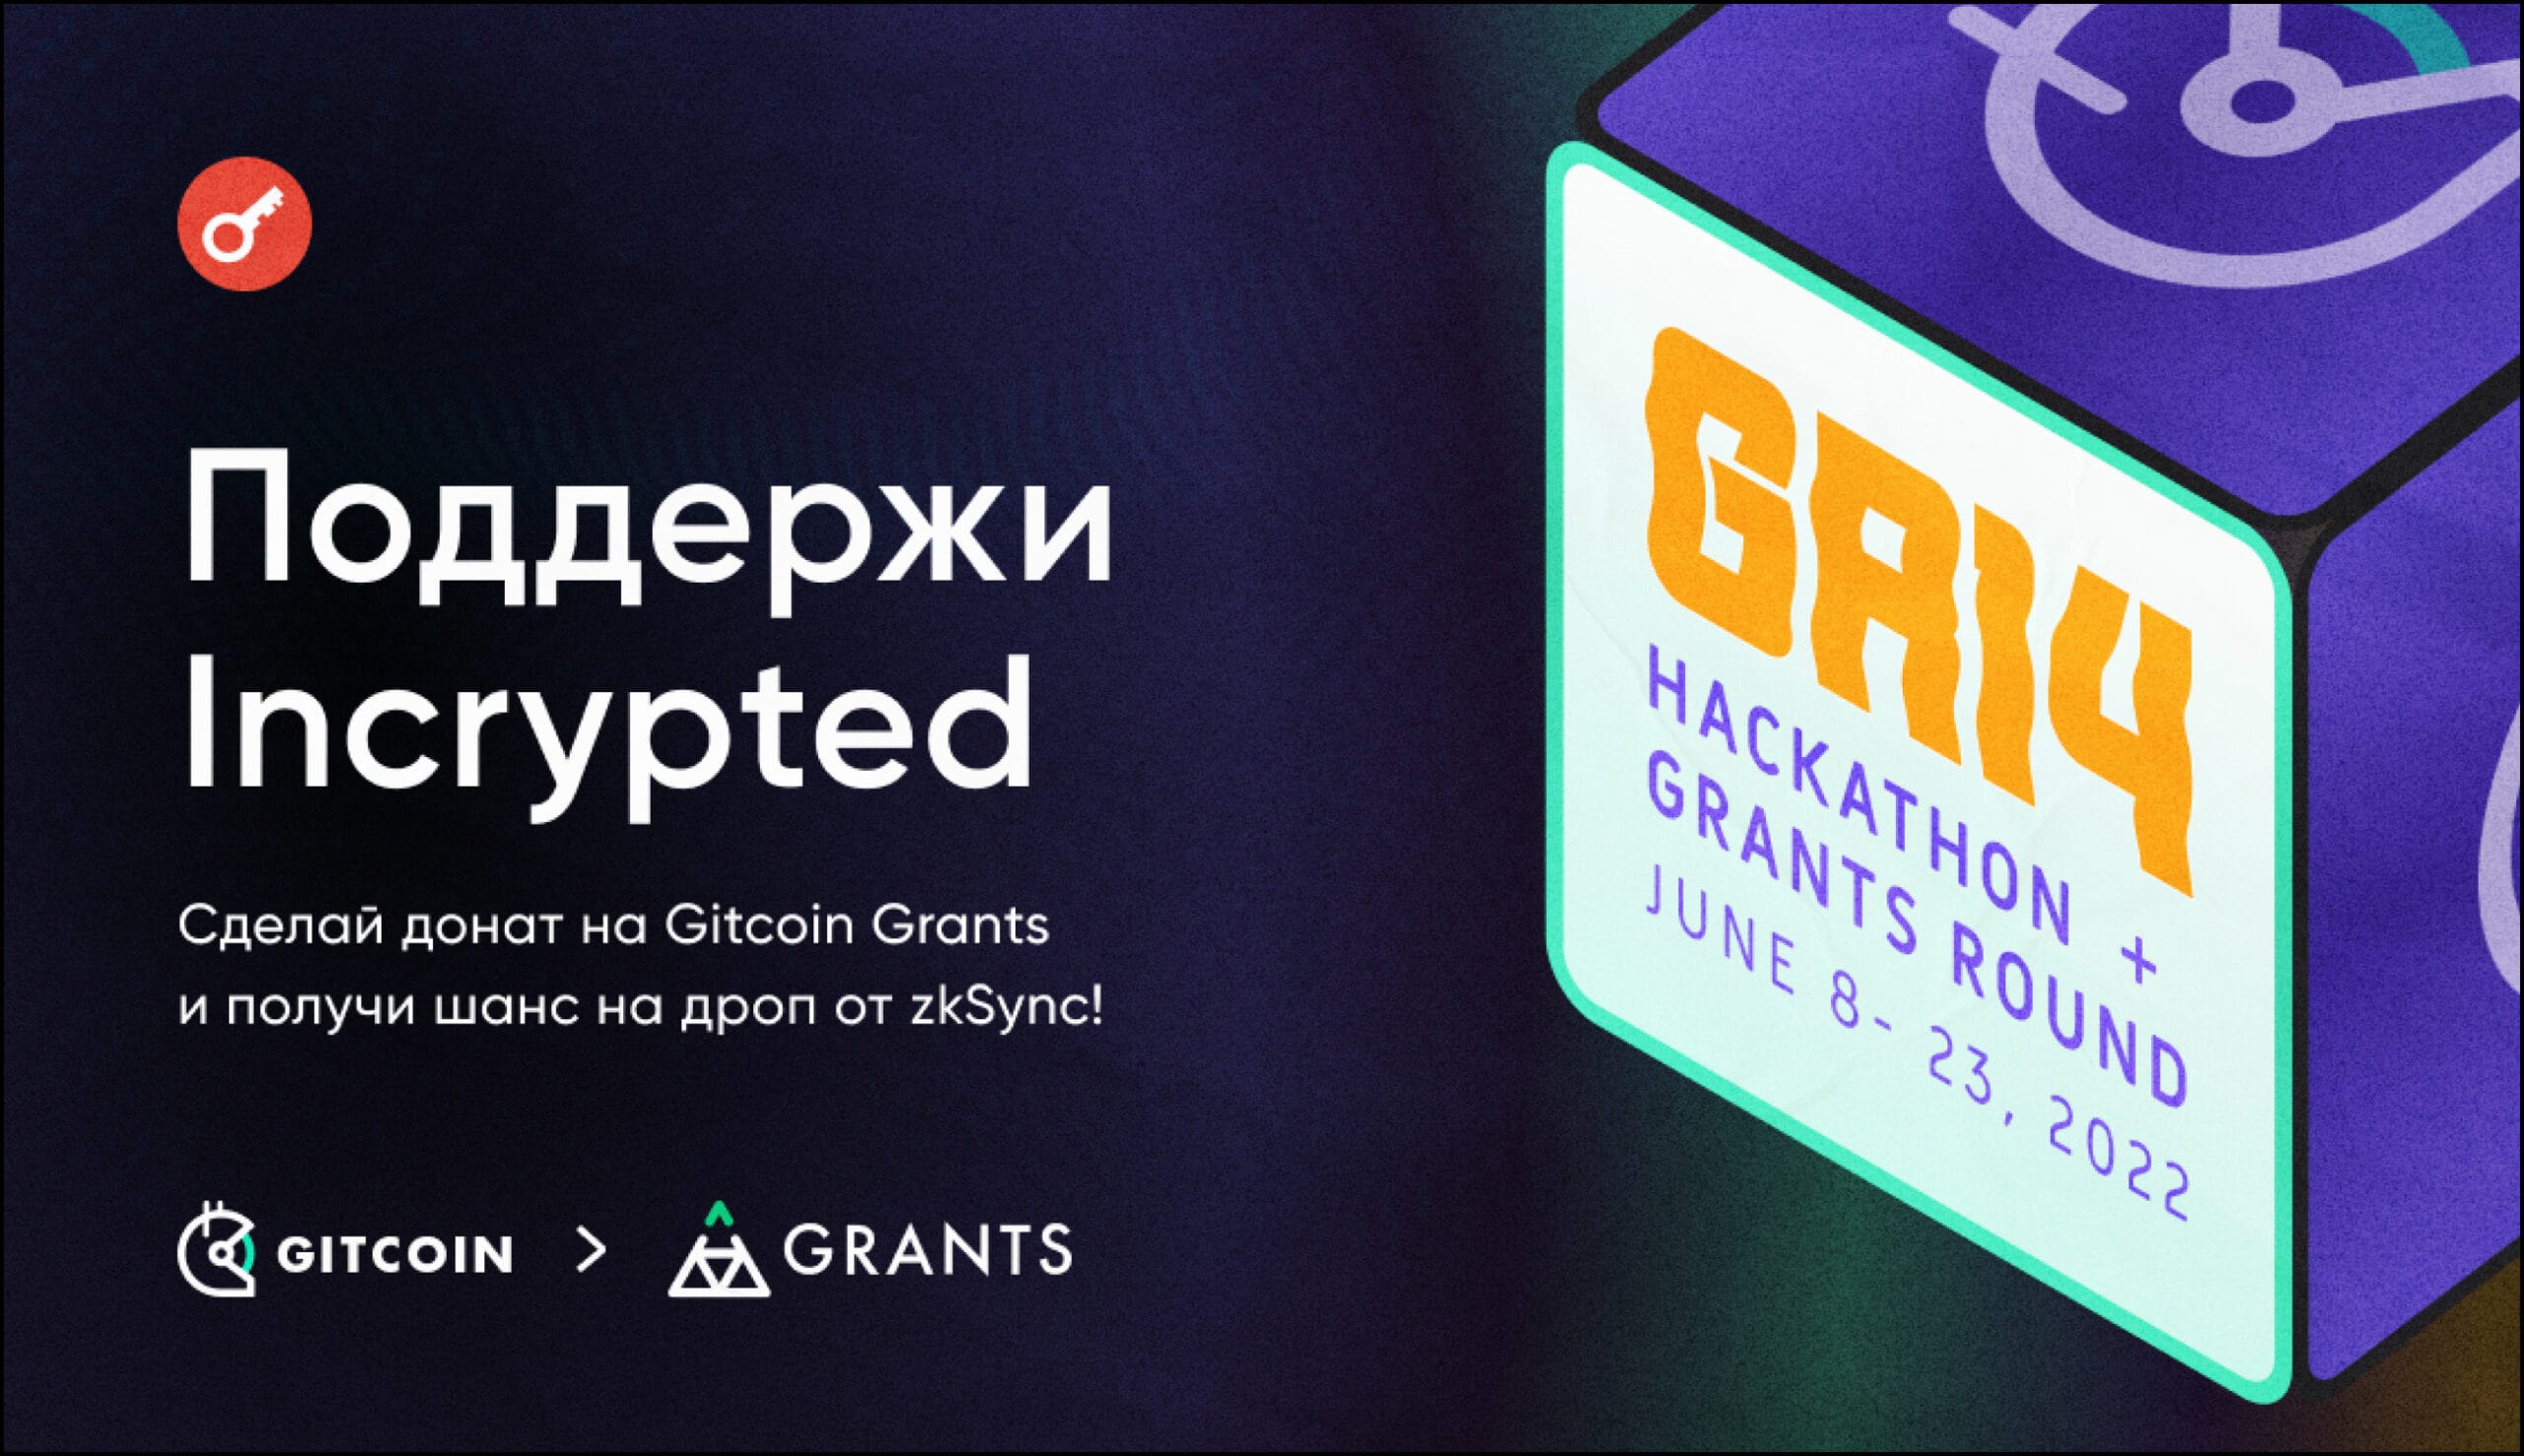 Поддержи Incrypted на Gitcoin Grants.